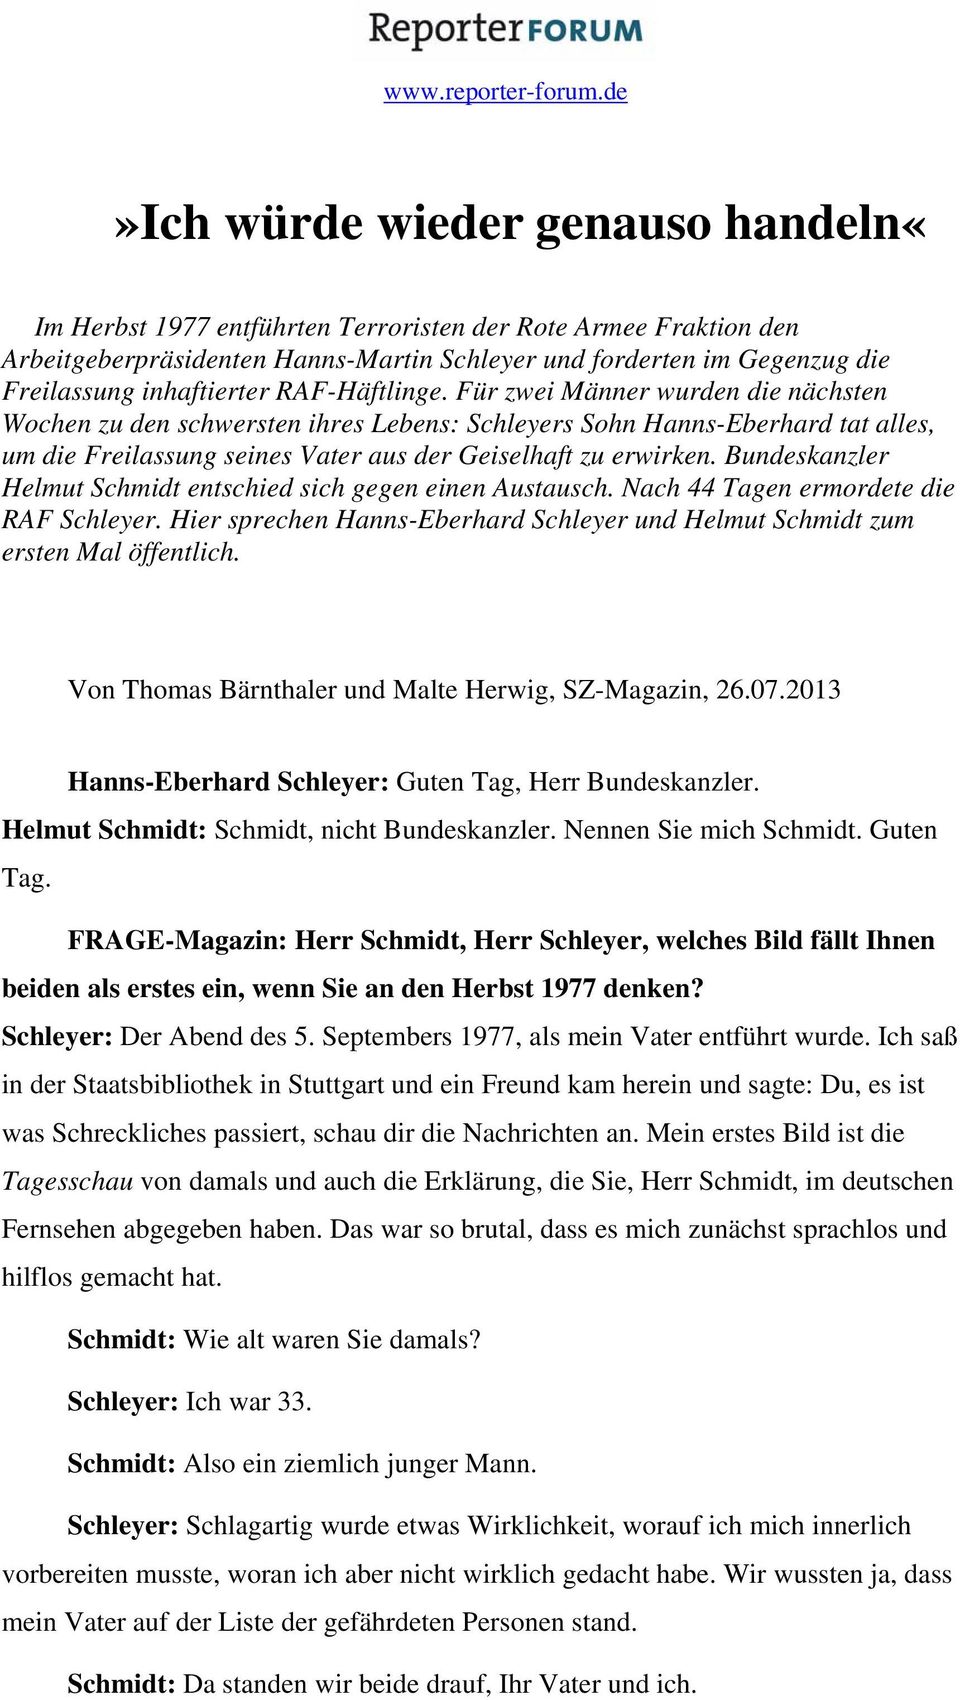 Bundeskanzler Helmut Schmidt entschied sich gegen einen Austausch. Nach 44 Tagen ermordete die RAF Schleyer. Hier sprechen Hanns-Eberhard Schleyer und Helmut Schmidt zum ersten Mal öffentlich.